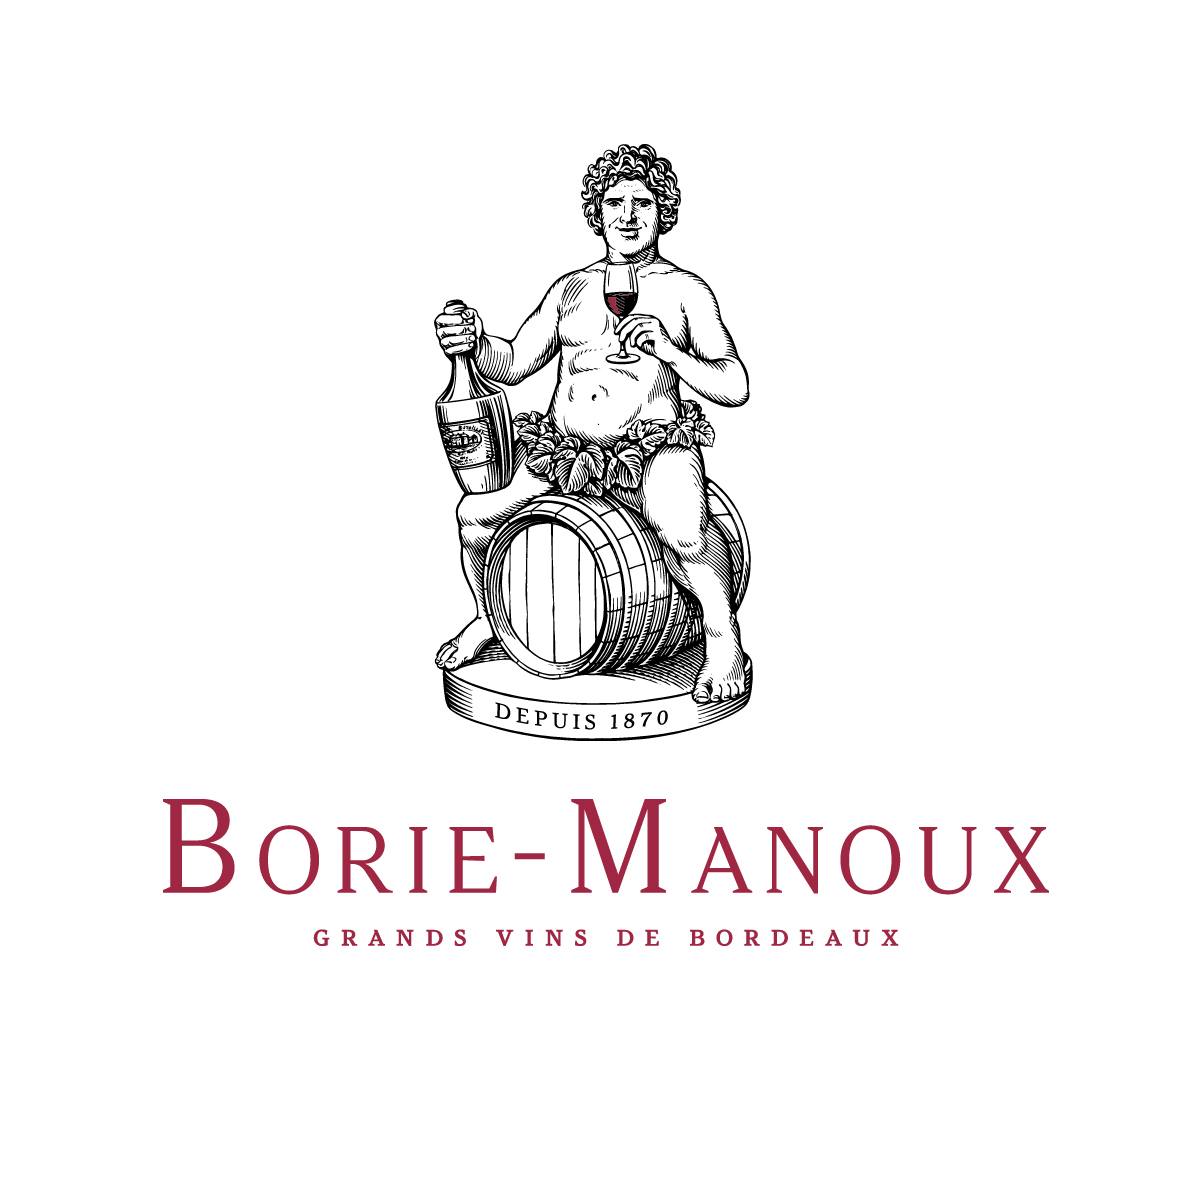 (c) Borie-manoux.com